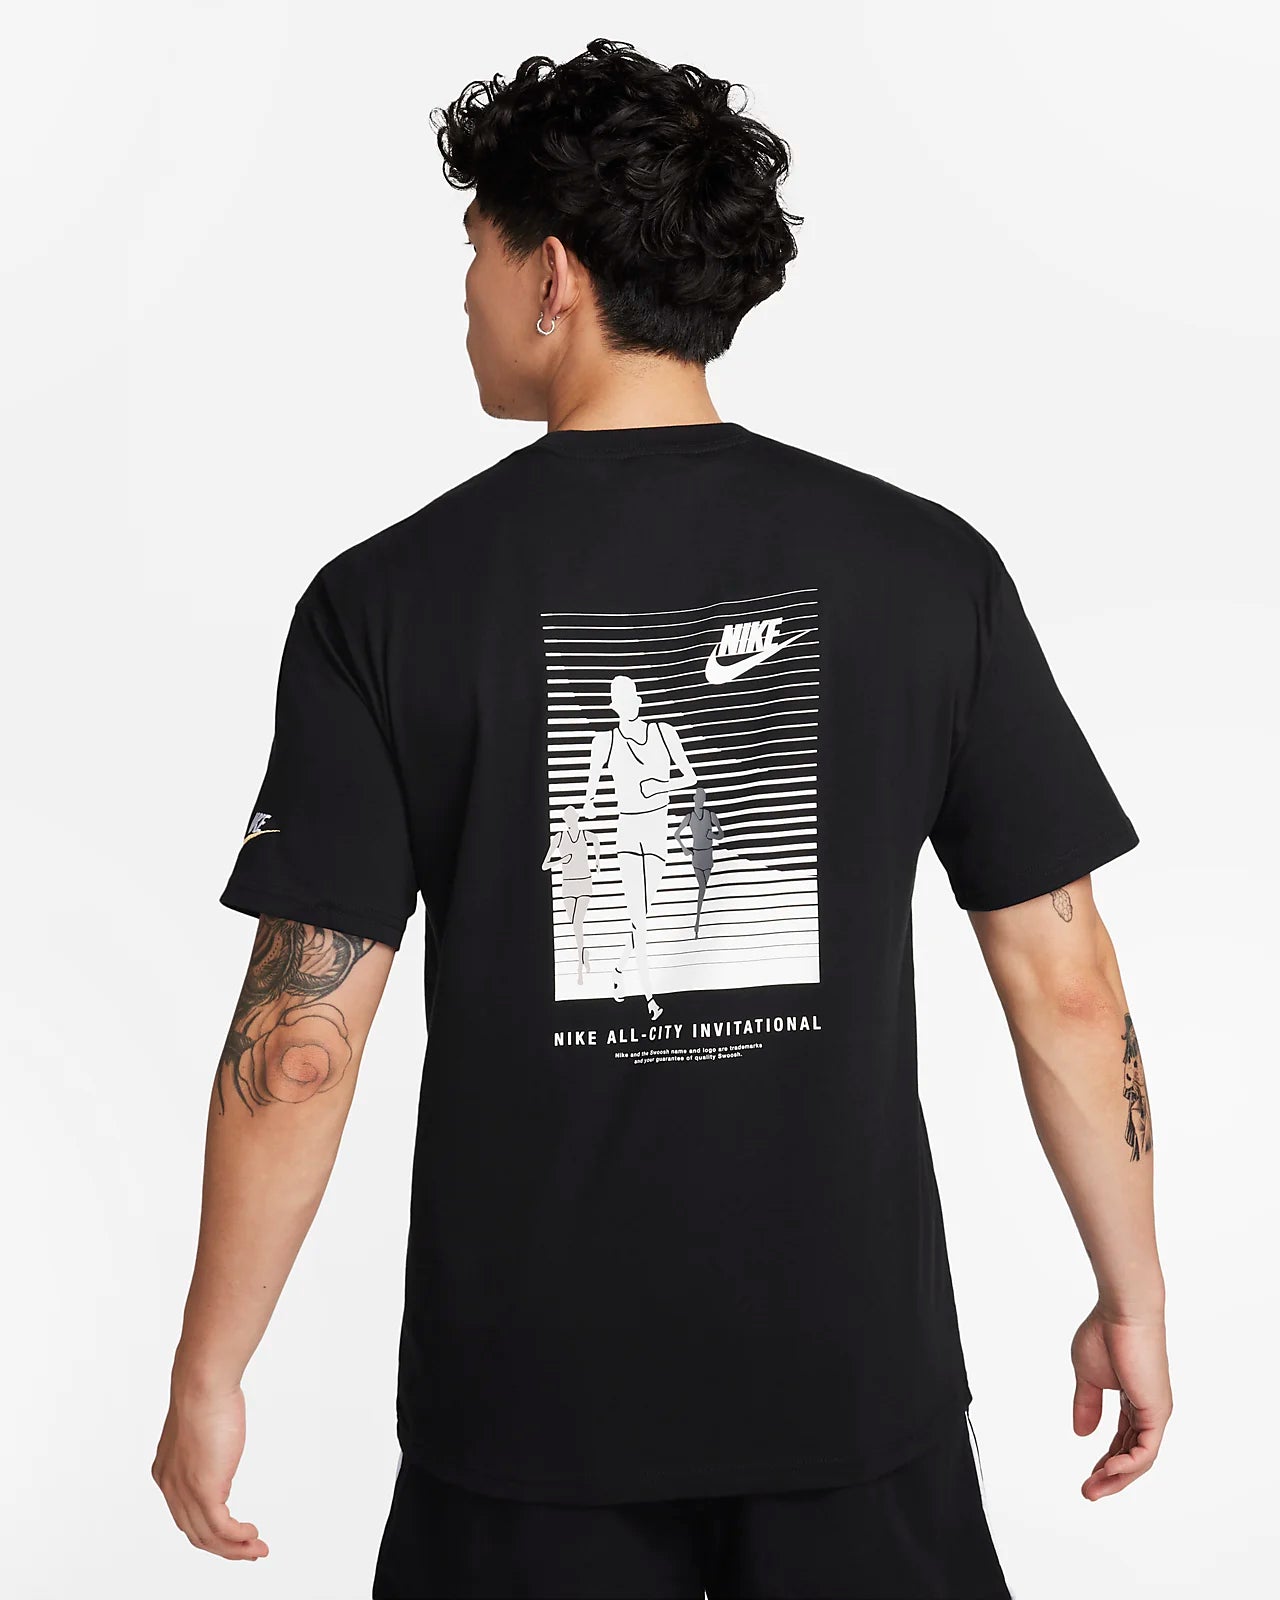 Nike Sportswear
Men's T-Shirt -Fn7224-010